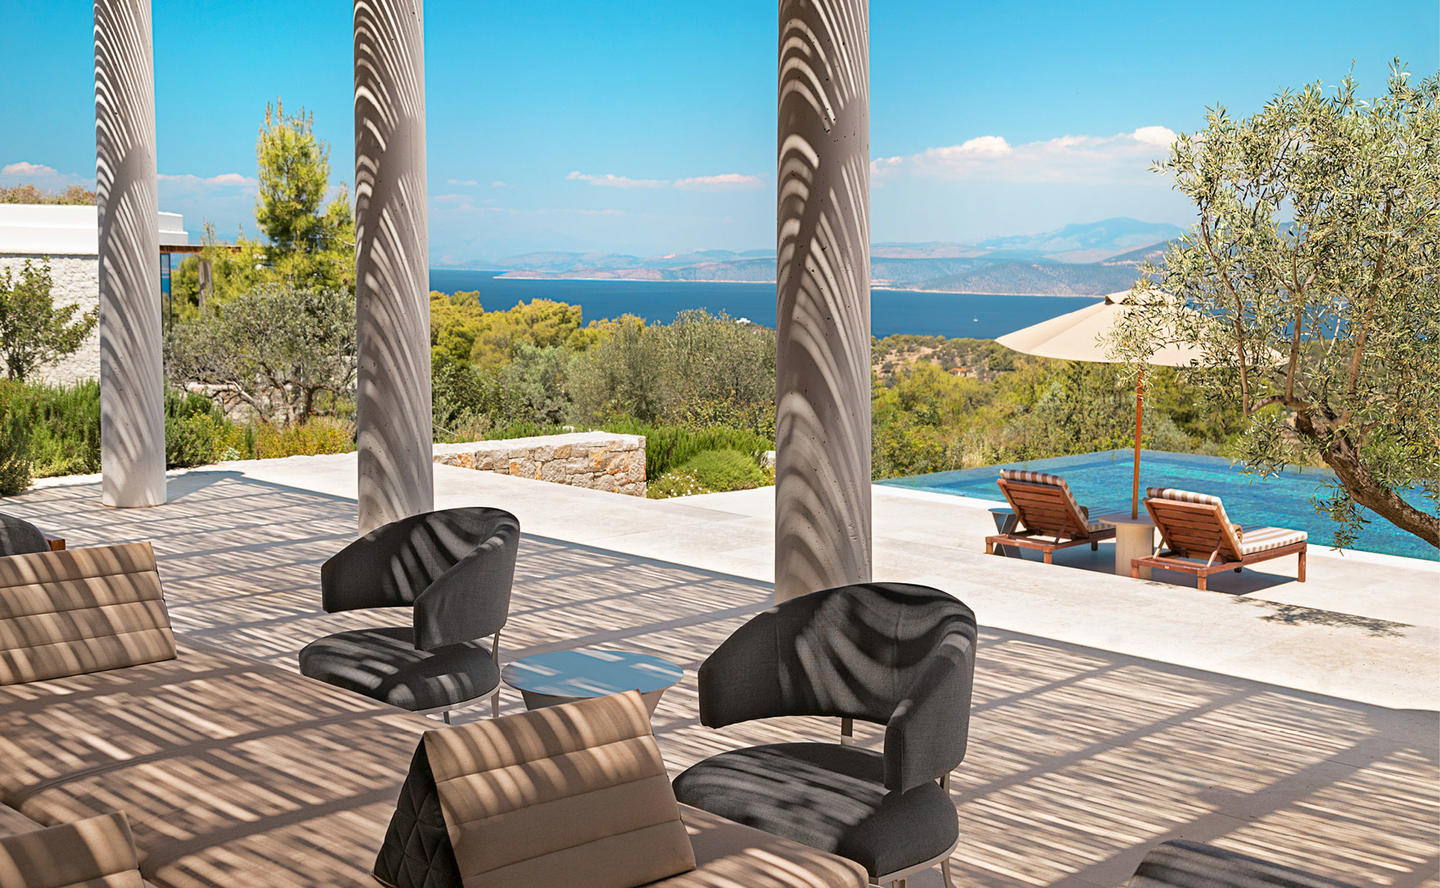 Outdoor Living overlooking Swimming Pool & Aegean, Five-Bedroom Villa - Amanzoe, Greece